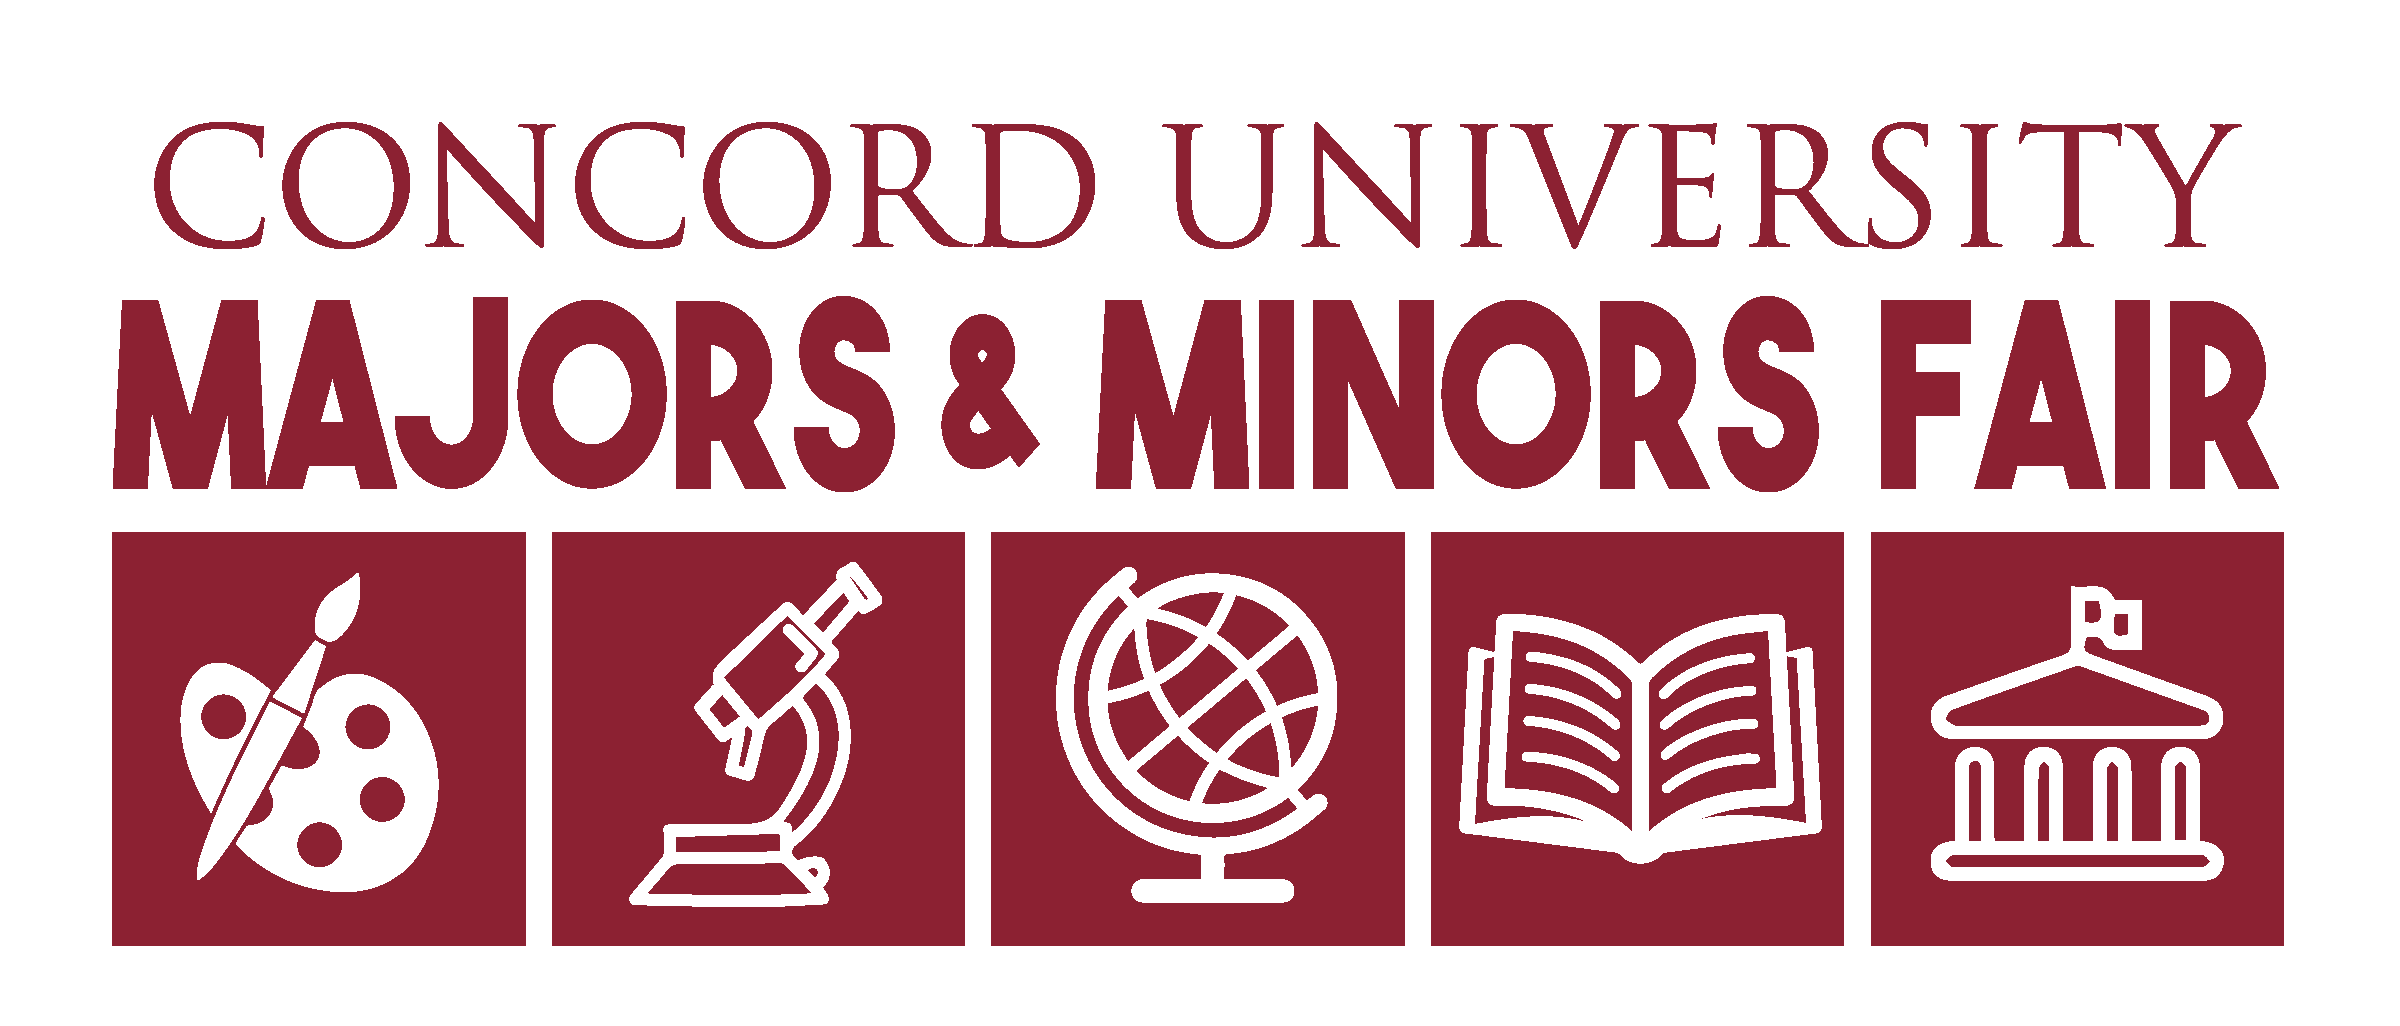 Concord University Majors & Minors Fair